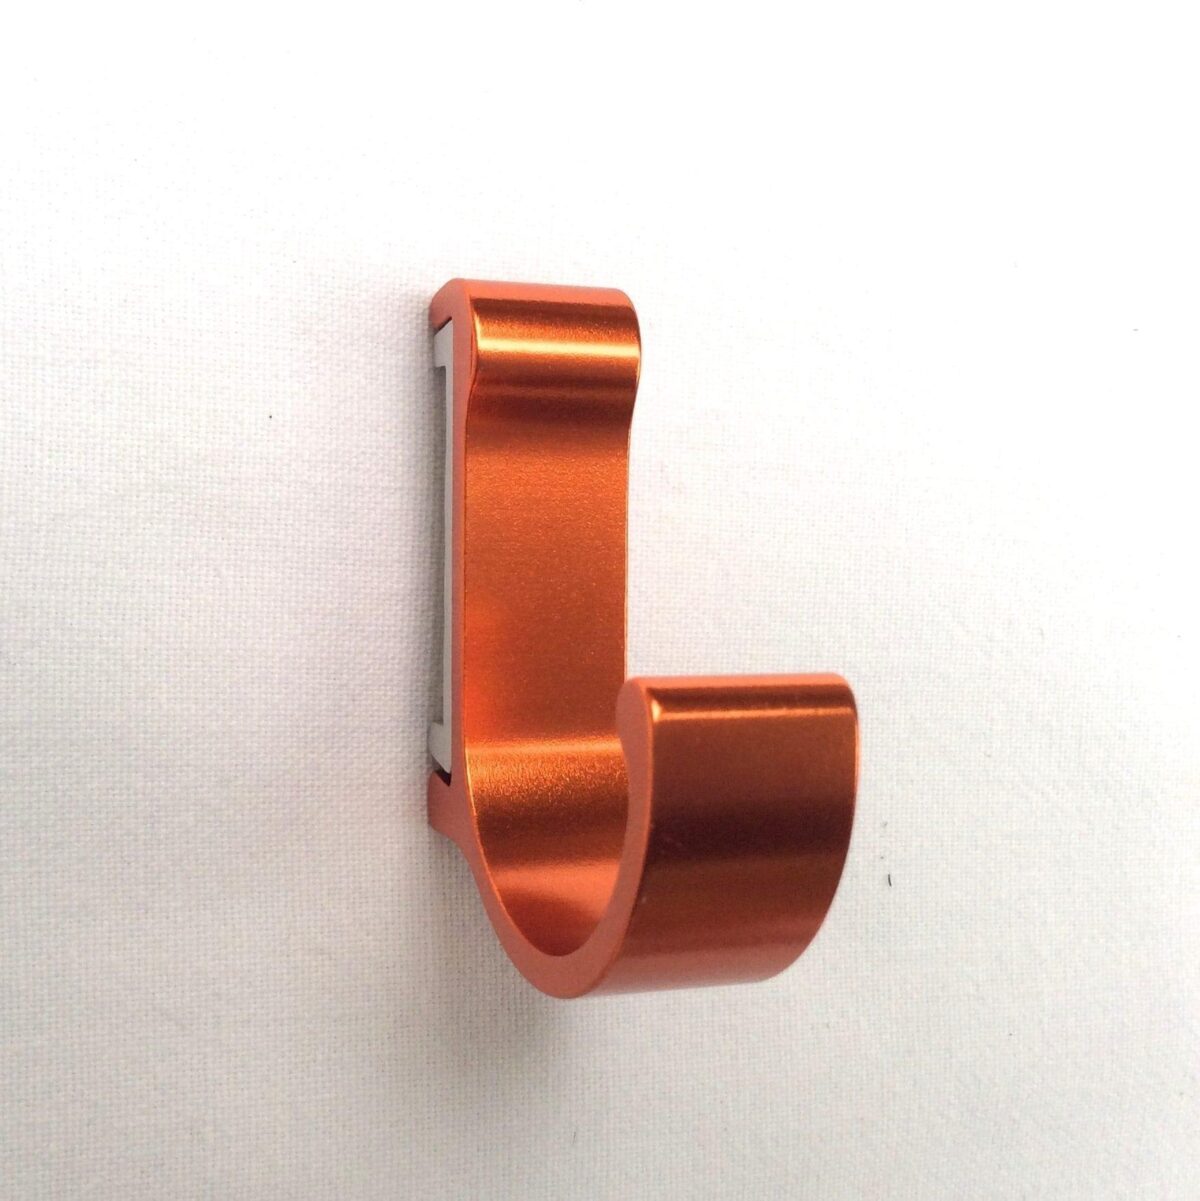 Image 1001 Patère patère color design aluminium orange dans le site N°1 de patère et porte-manteaux de france